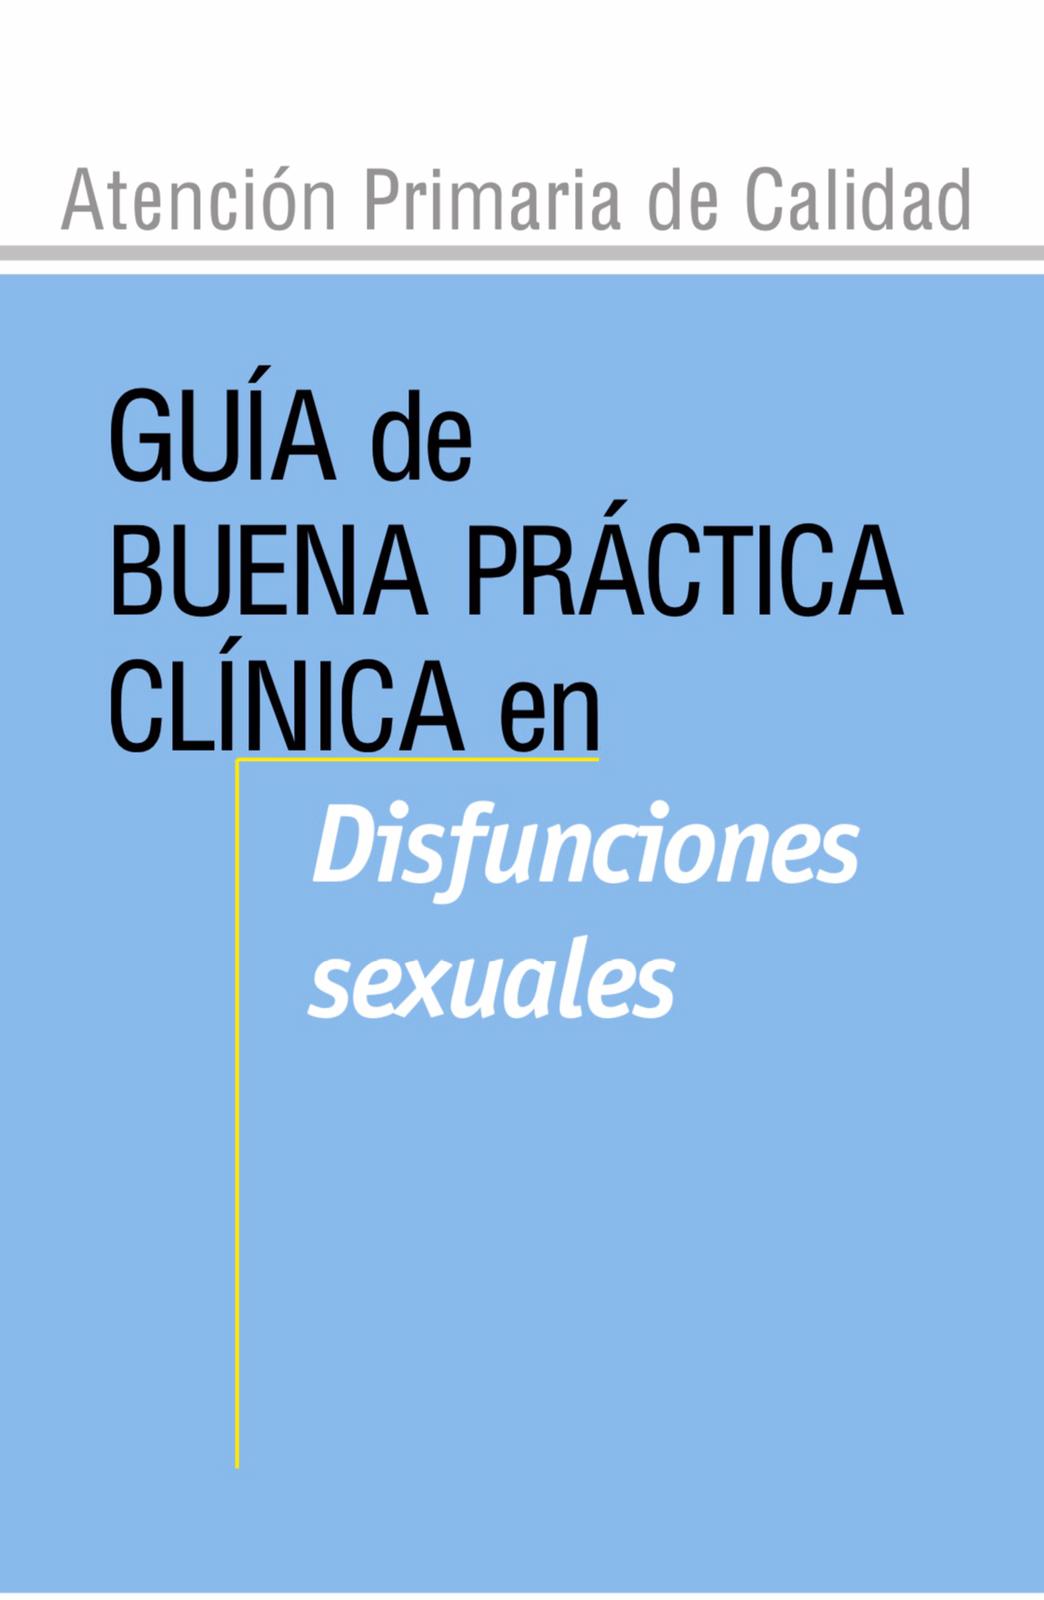 Atención Primaria de Calidad. Guia de buena práctica clinica en disfunciones sexuales